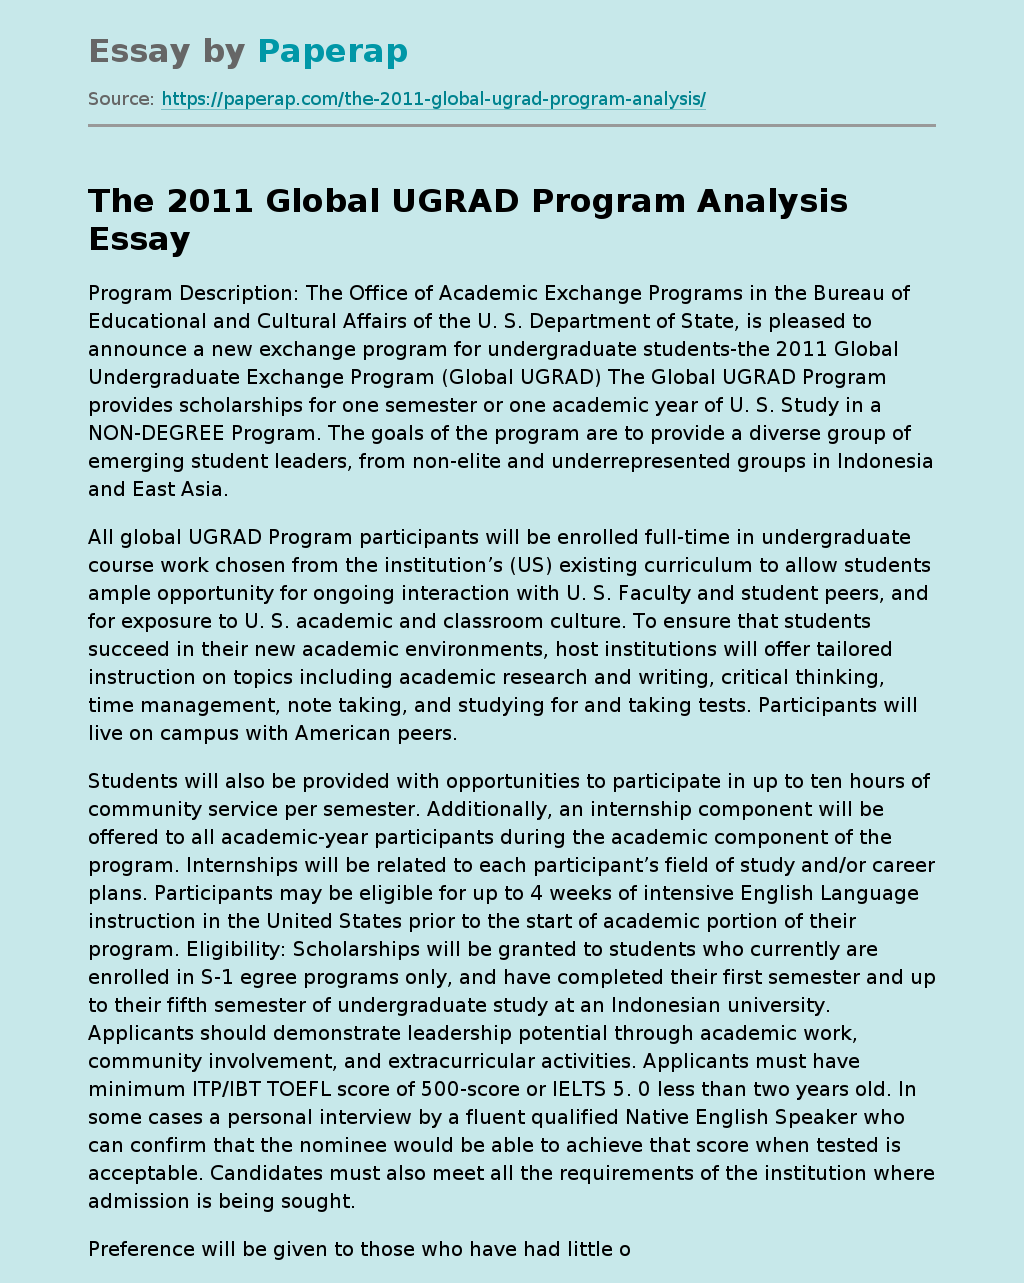 The 2011 Global UGRAD Program Analysis